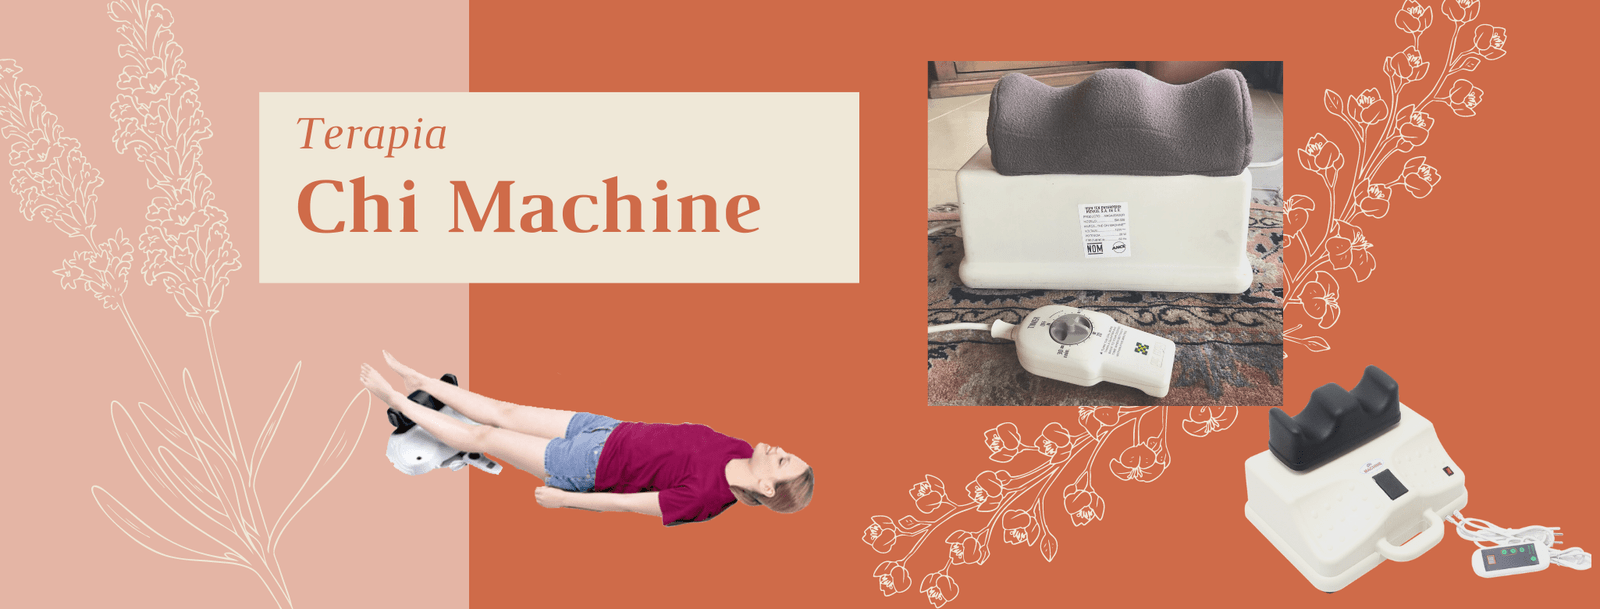 la máquina Chi fue desarrollado para ayudar al cuerpo a generar Chi y se mueven por todo el cuerpo.